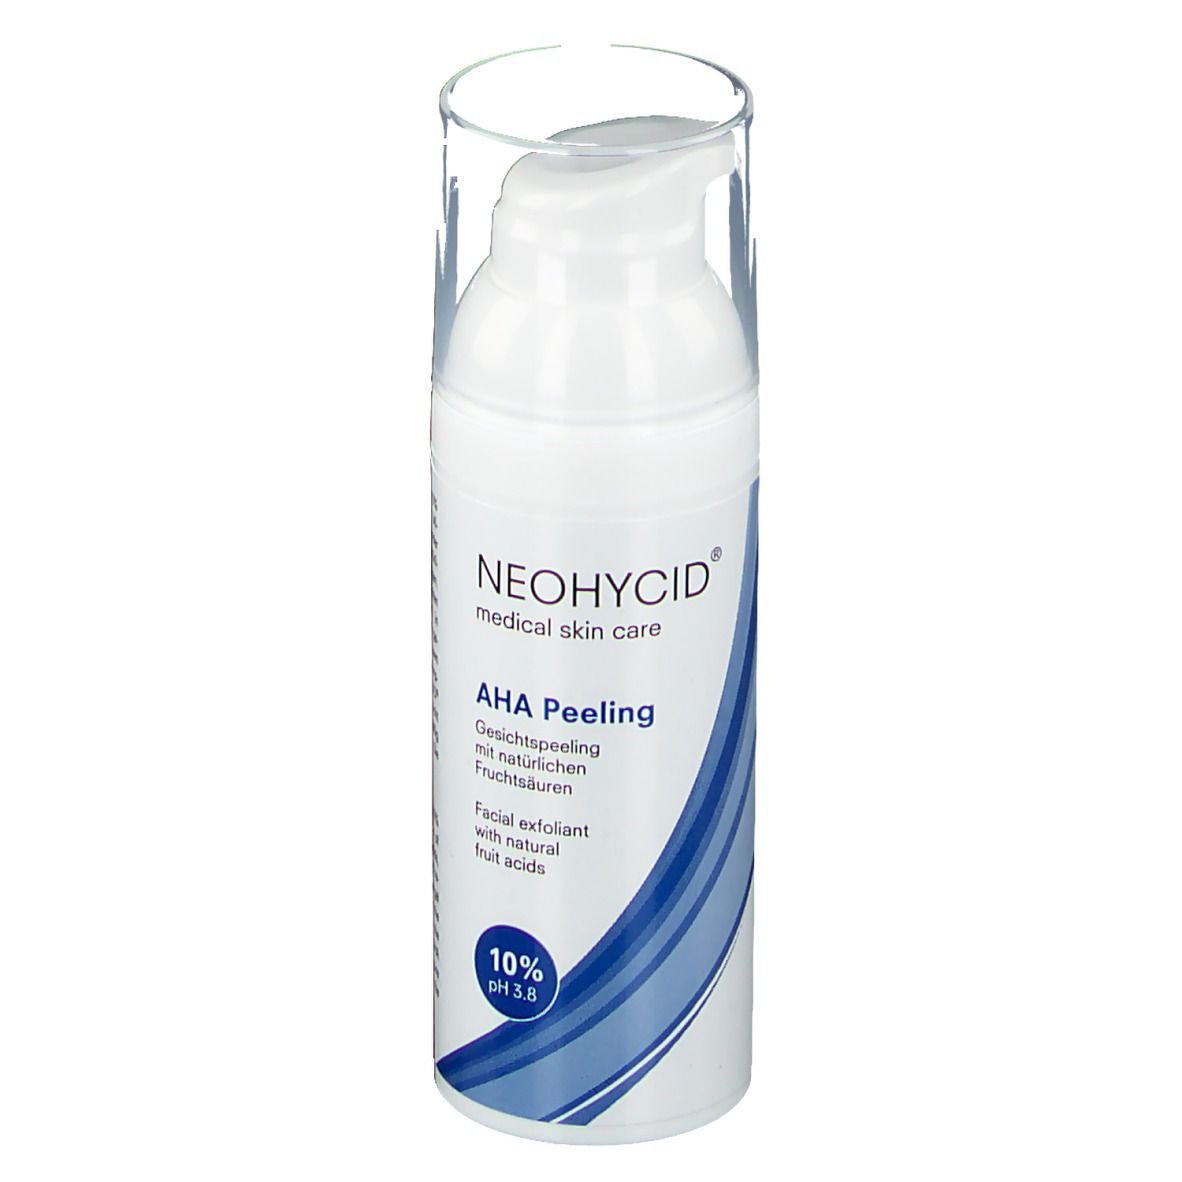 Image of NEOHYCID® 10% AHA Peeling